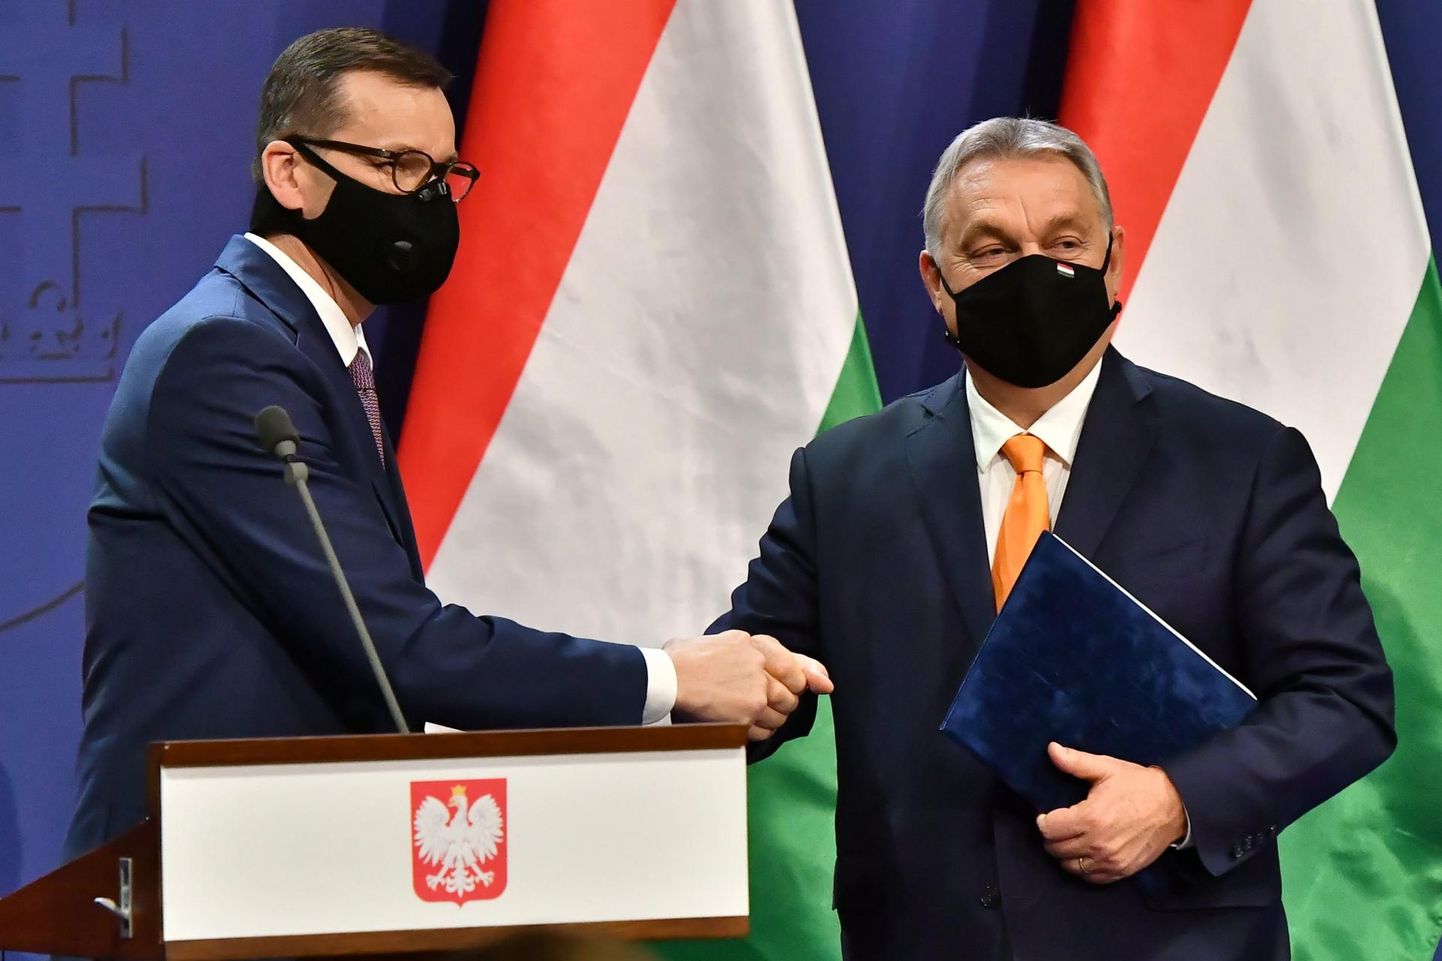 Euroopa Parlamendi otsuse kohaselt tuleb rahastamine siduda väärtustega, mis tagaks õigussüsteemi vabaduse. Poola ja Ungari seisavad sellele vastu.